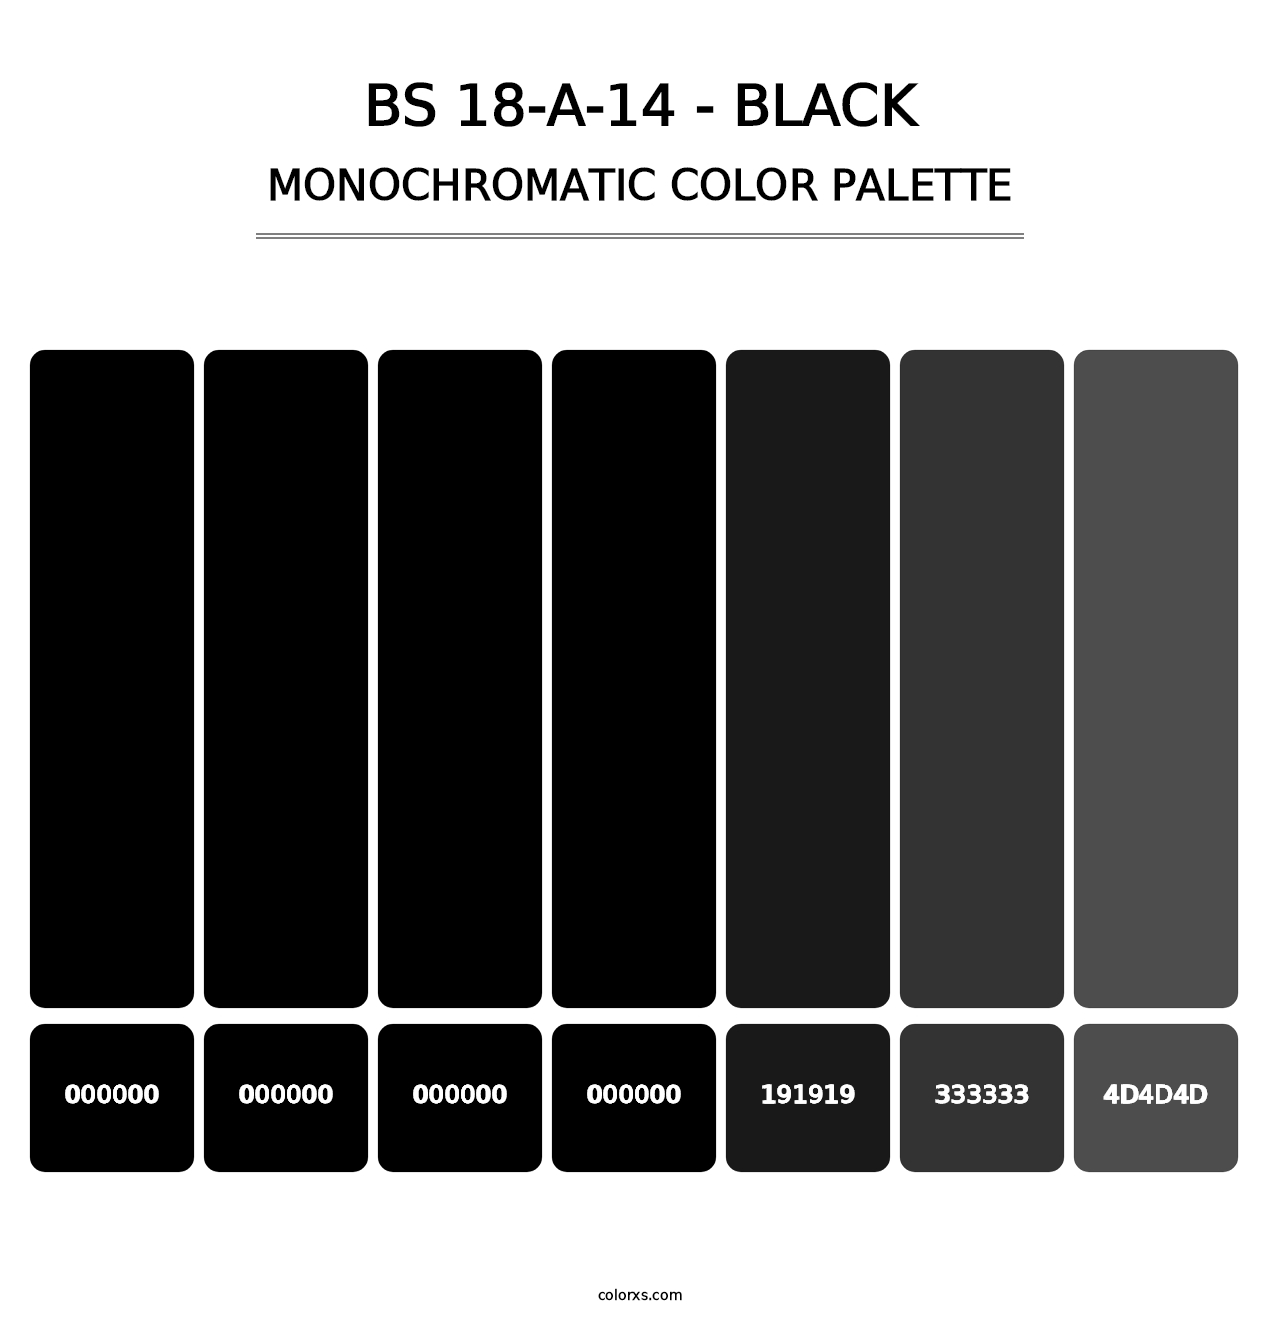 BS 18-A-14 - Black - Monochromatic Color Palette